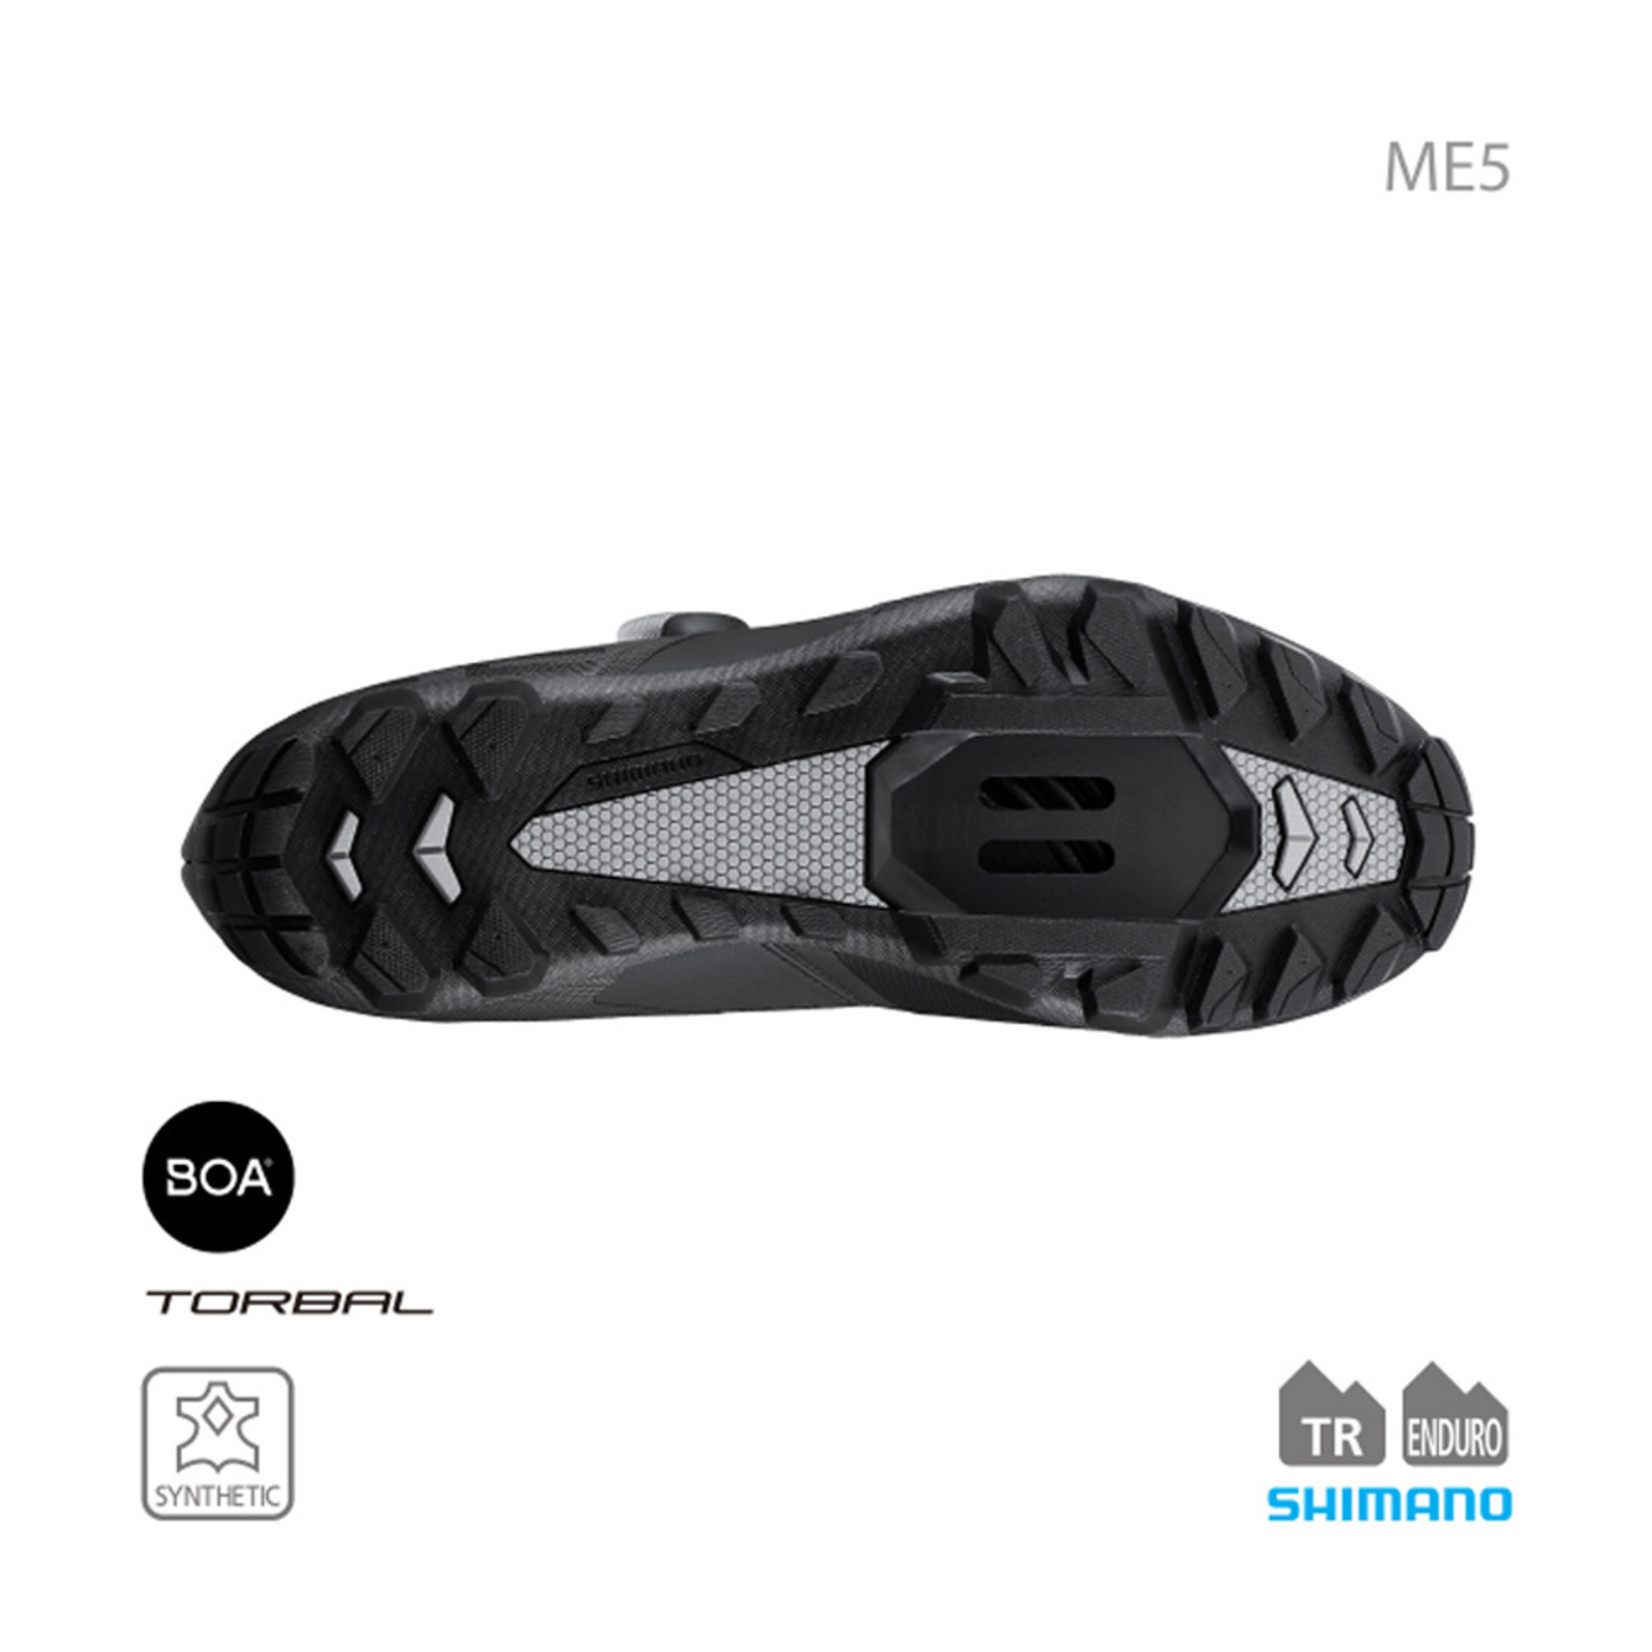 Shimano Shimano SH-ME502 SPD Shoes - Black